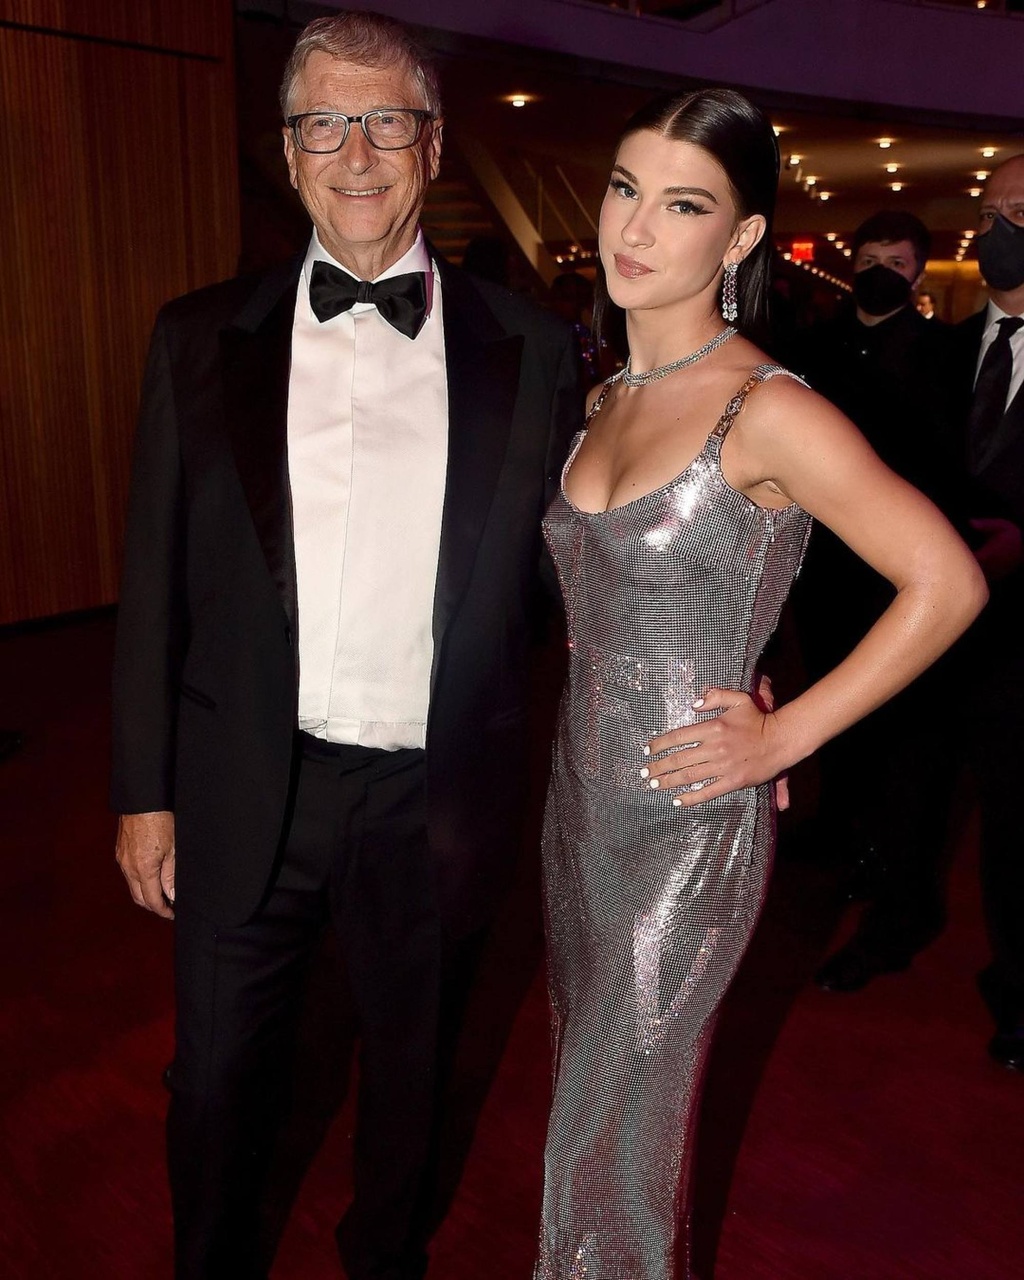 Con gái út của Bill Gates nổi tiếng nhờ chăm mặc hở khoe dáng nóng bỏng - 1